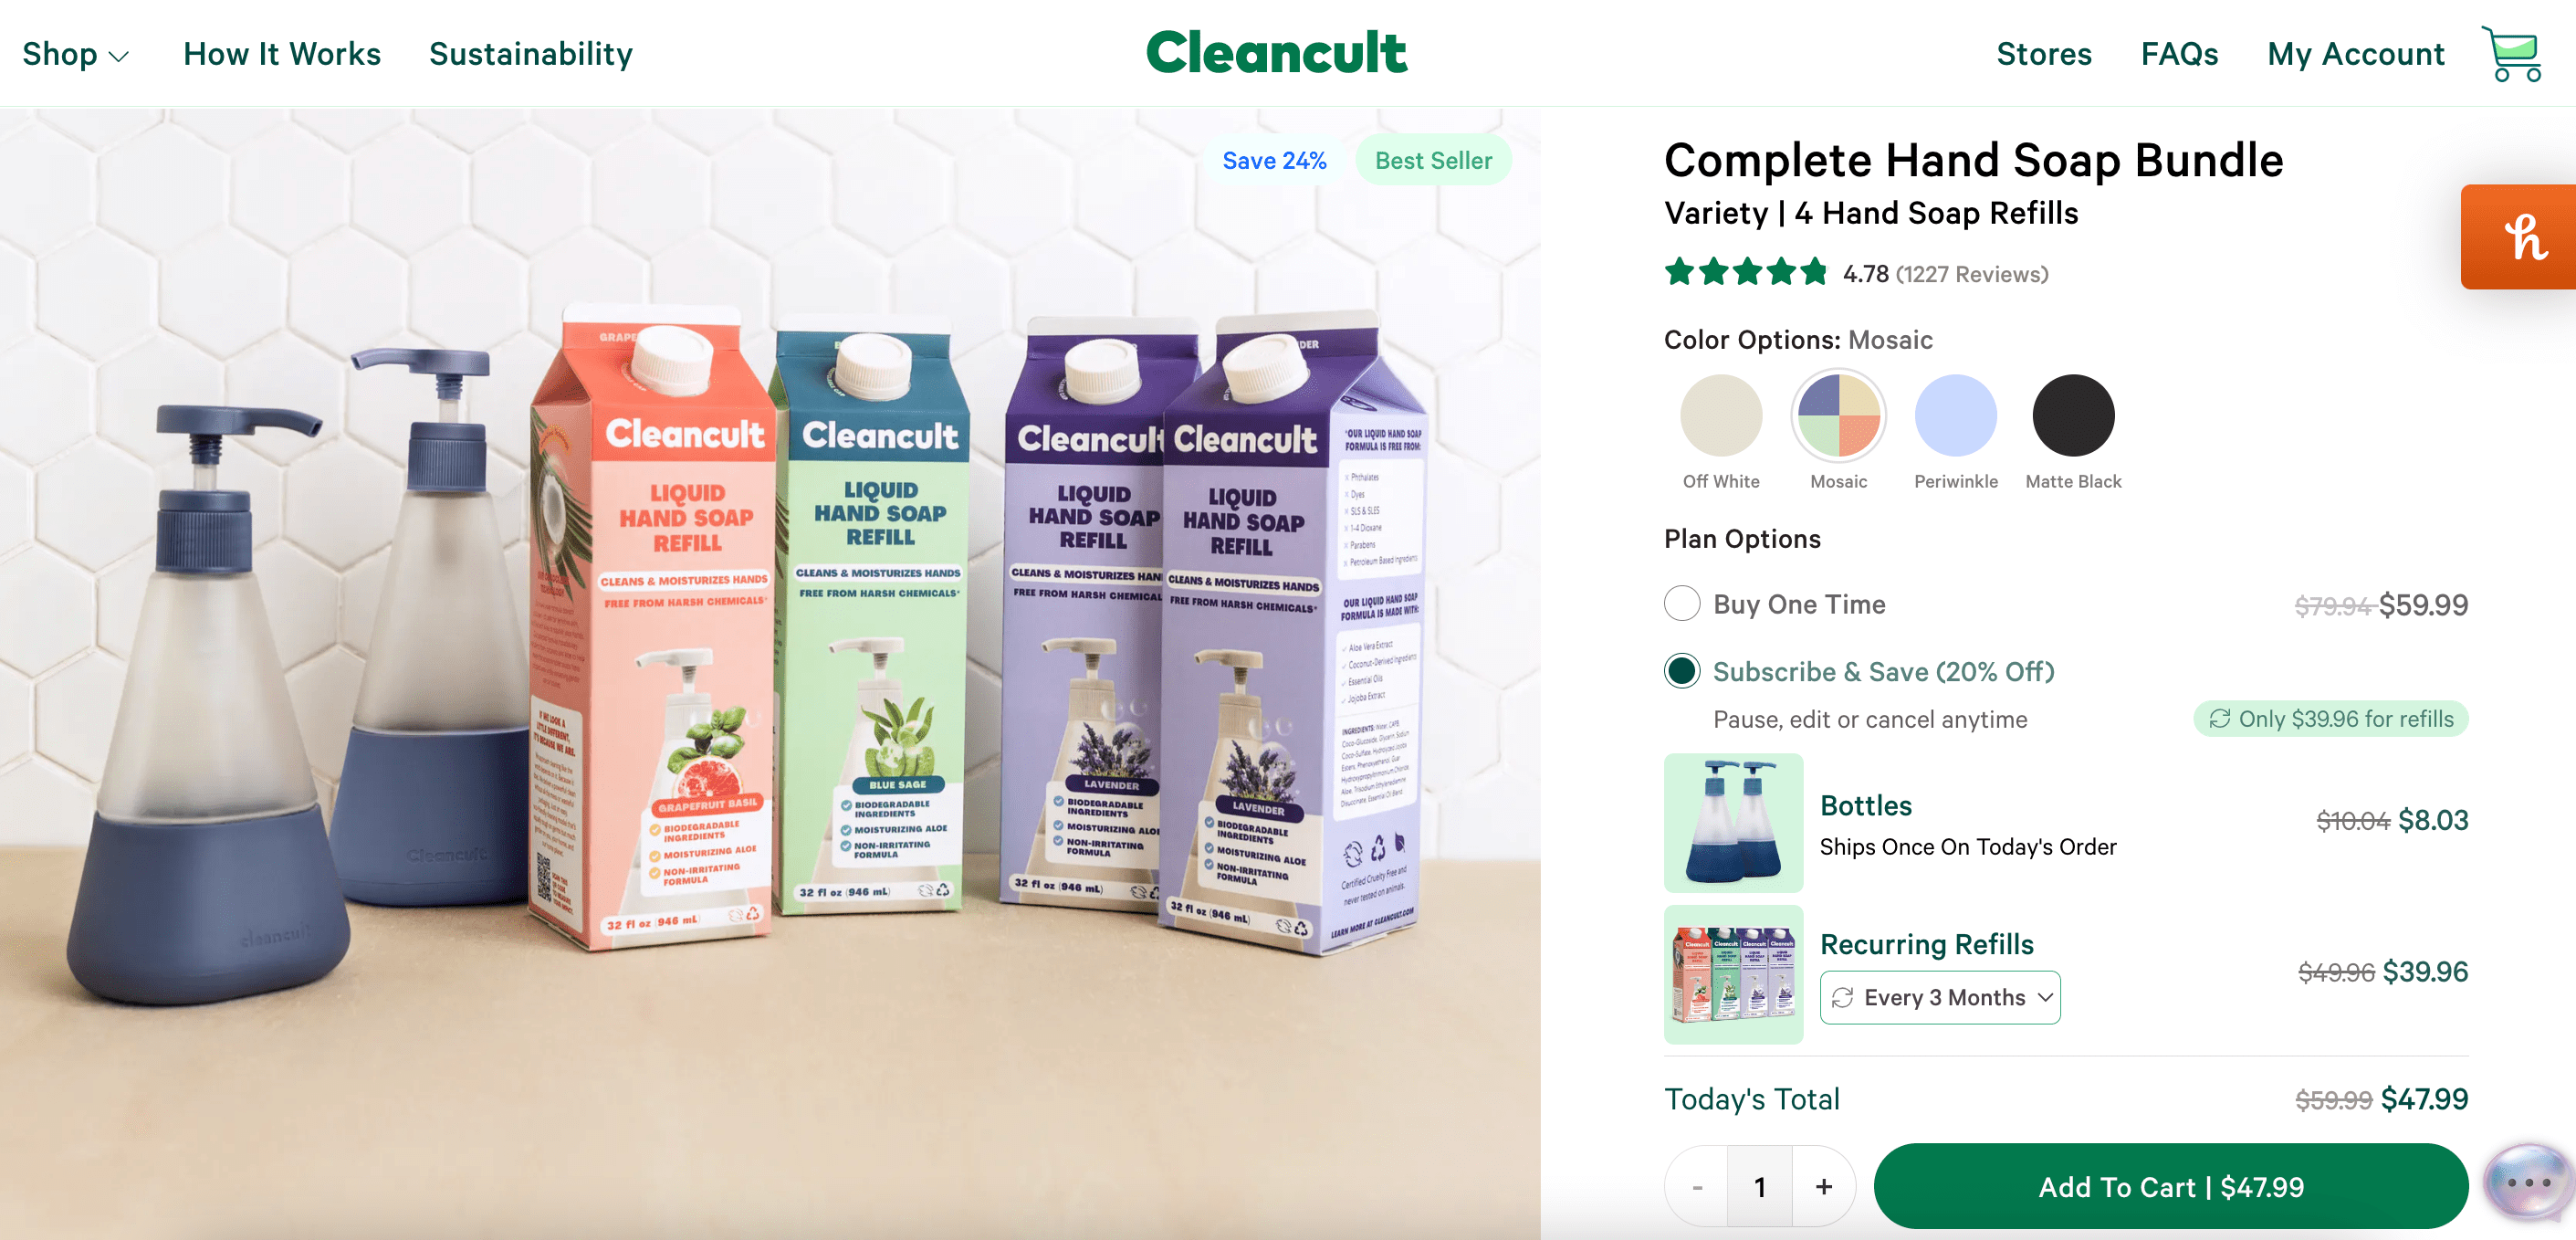 Cleancult cross-selling bundles